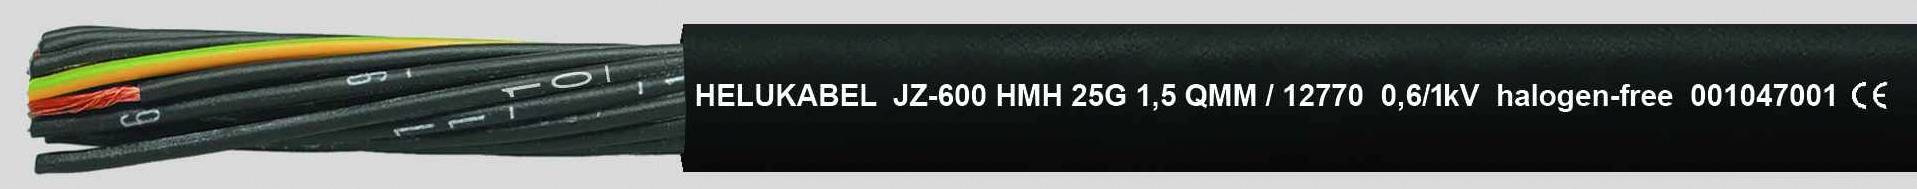 HELUKABEL HELU JZ-600 HMH 4G1,5 12762 Schwarz Steuerleitung halogenfrei